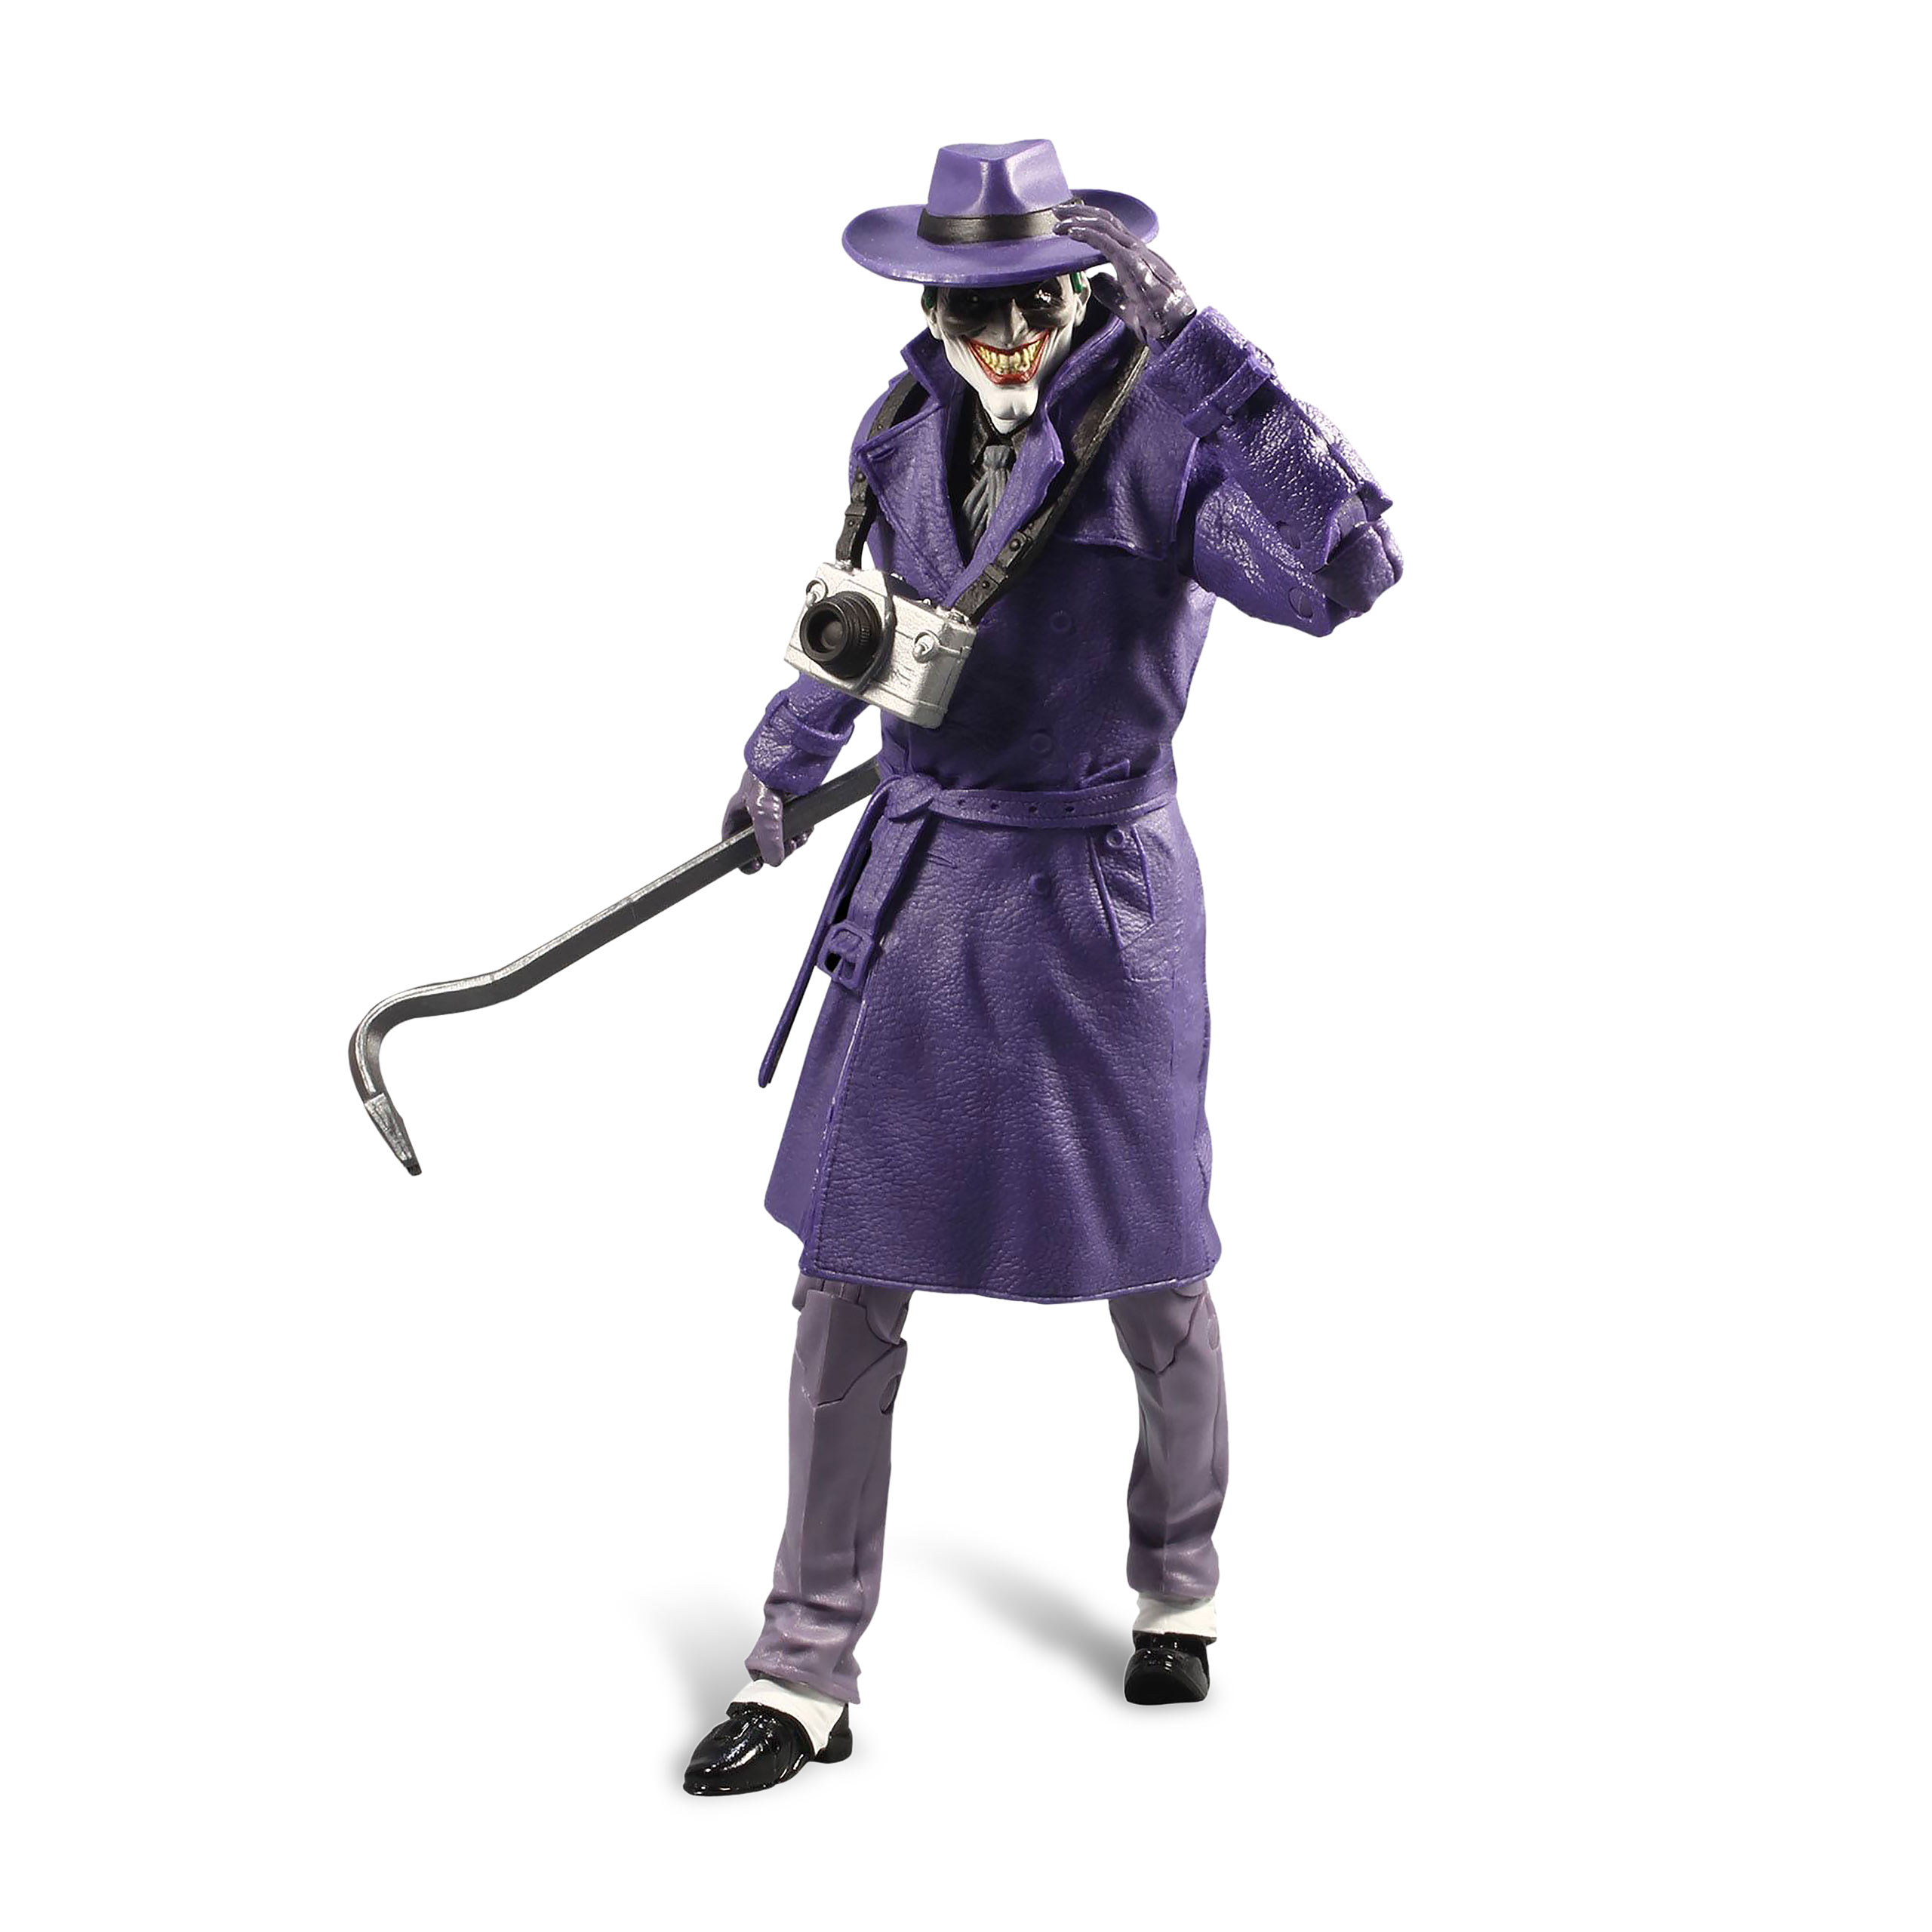 Joker - The Comedian Actionfigur 18cm